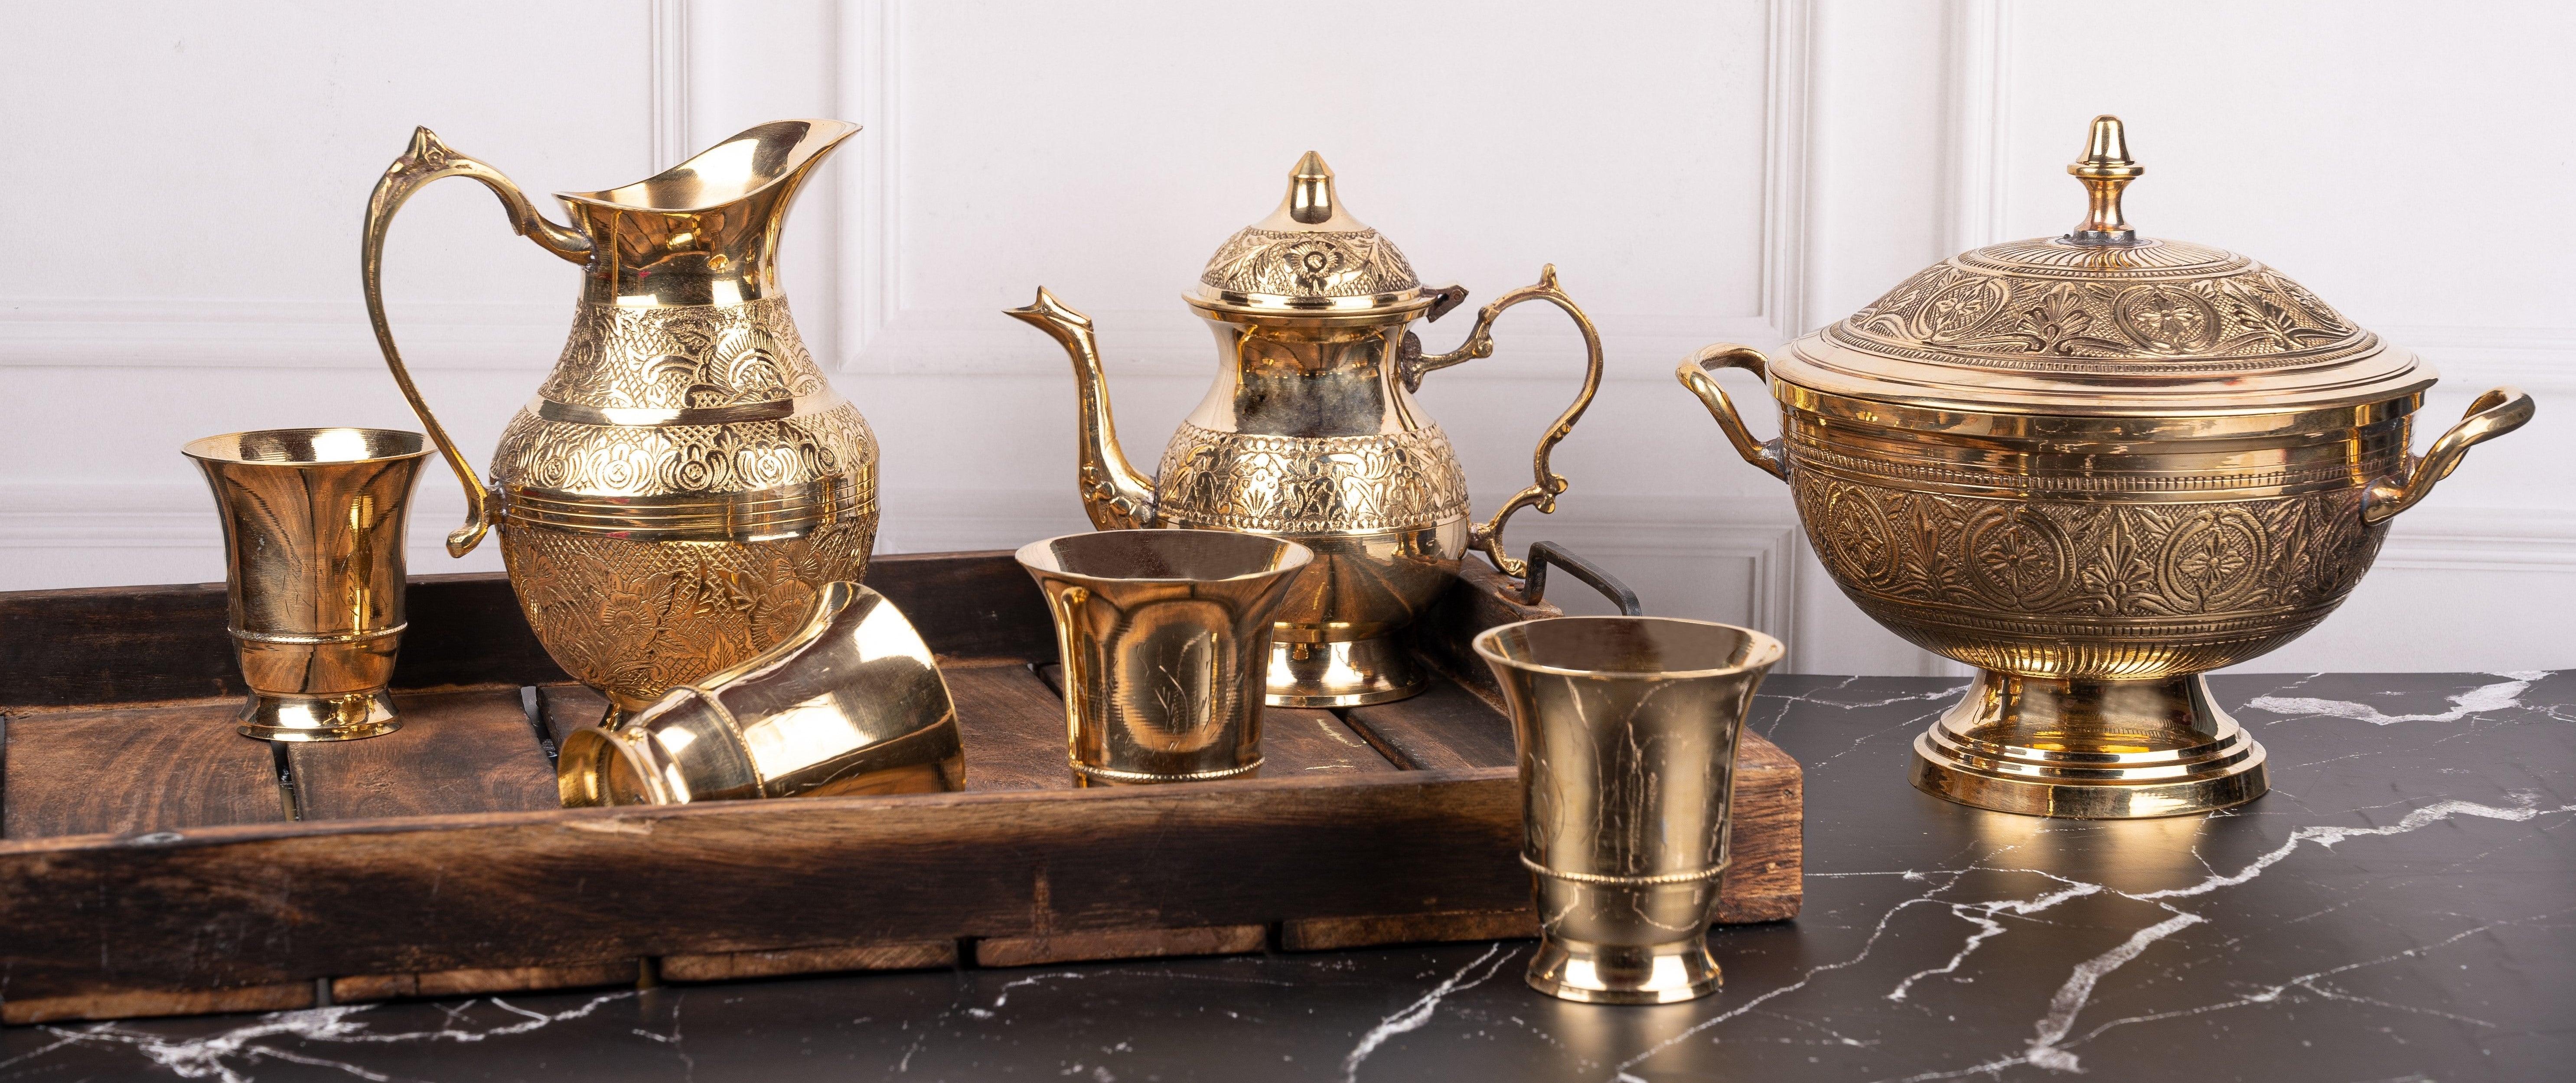 Buy Online Brass Metal Handicraft At Best Price: The Heritage Artifacts